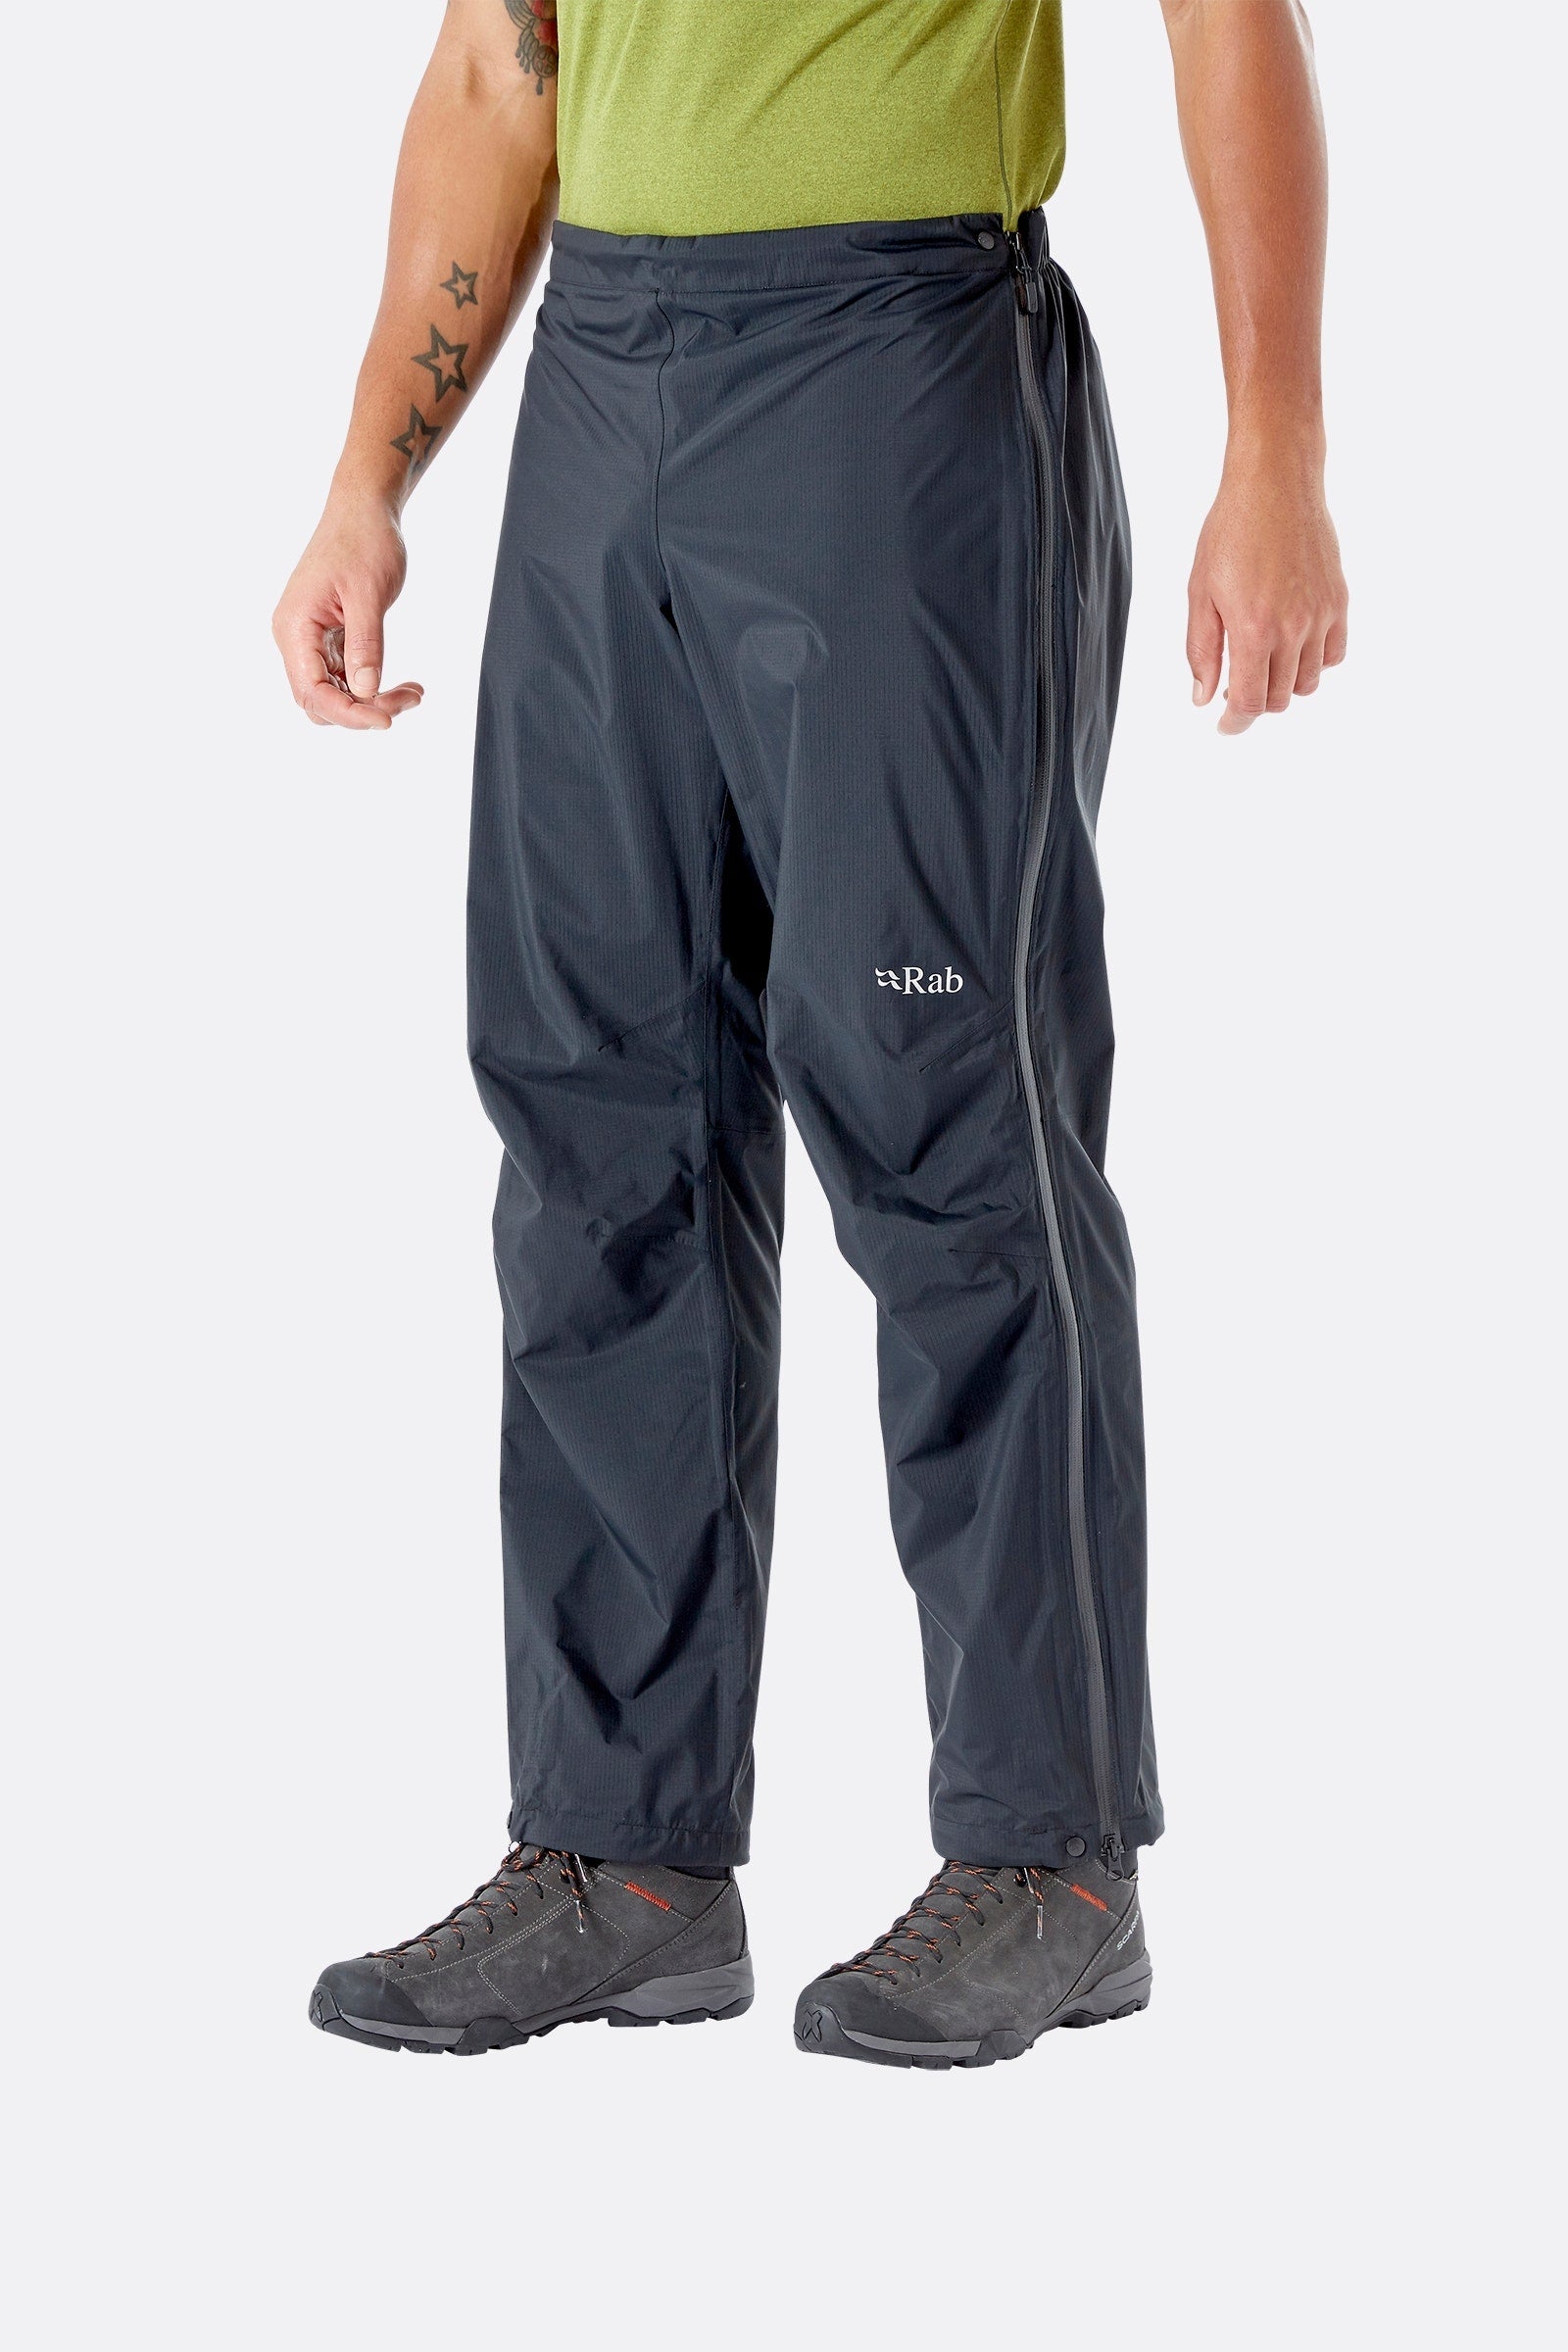 Rab Men's Downpour Plus 2.0 Waterproof Pant